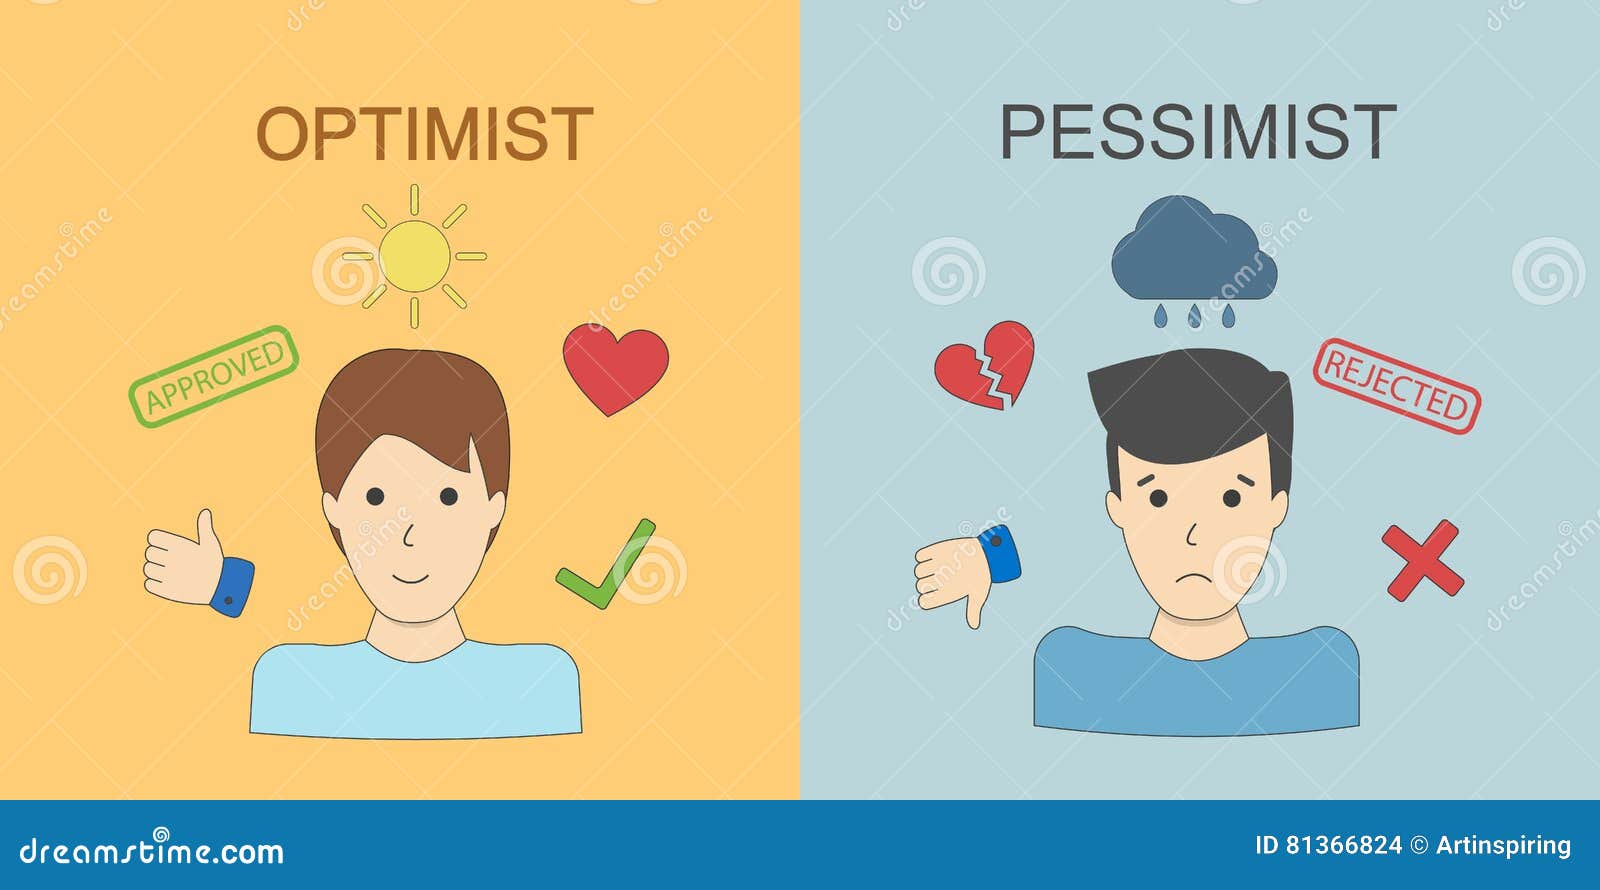 optimist and pessimist.